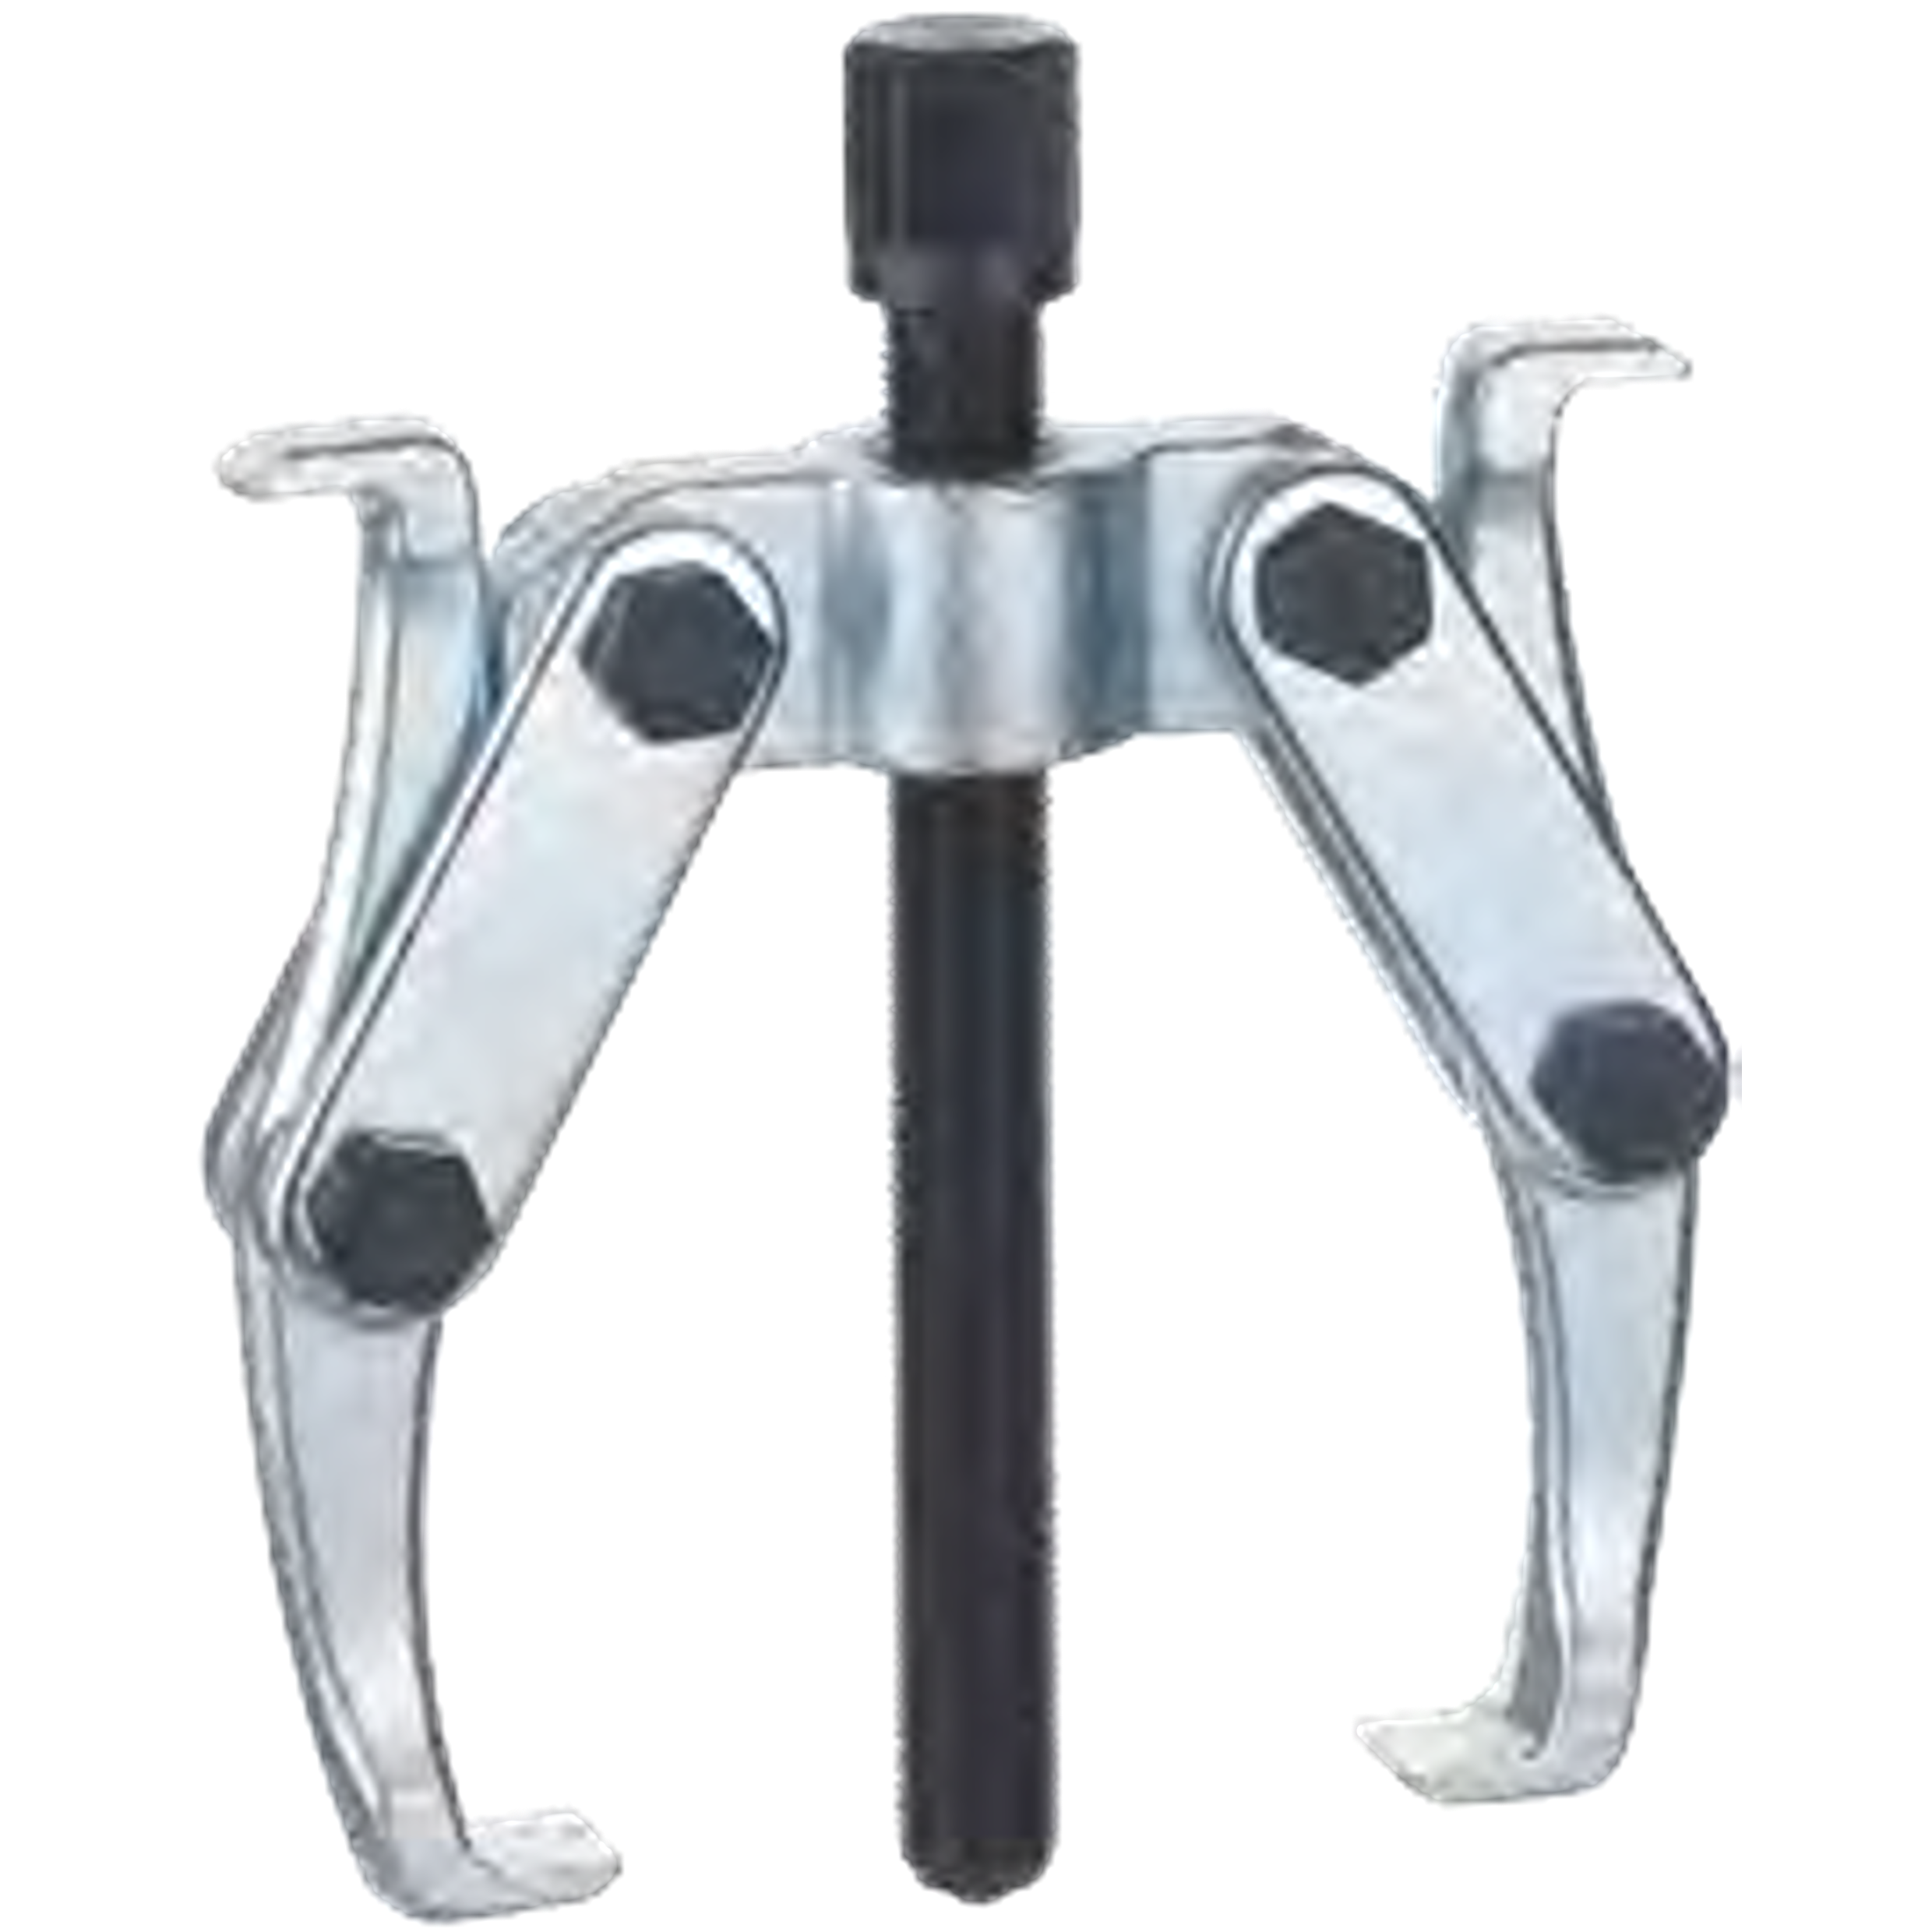 NEXUS 131 2-Arm Puller Self-Locking Strap - Premium 2-Arm Puller Self-Locking Strap from NEXUS - Shop now at Yew Aik.